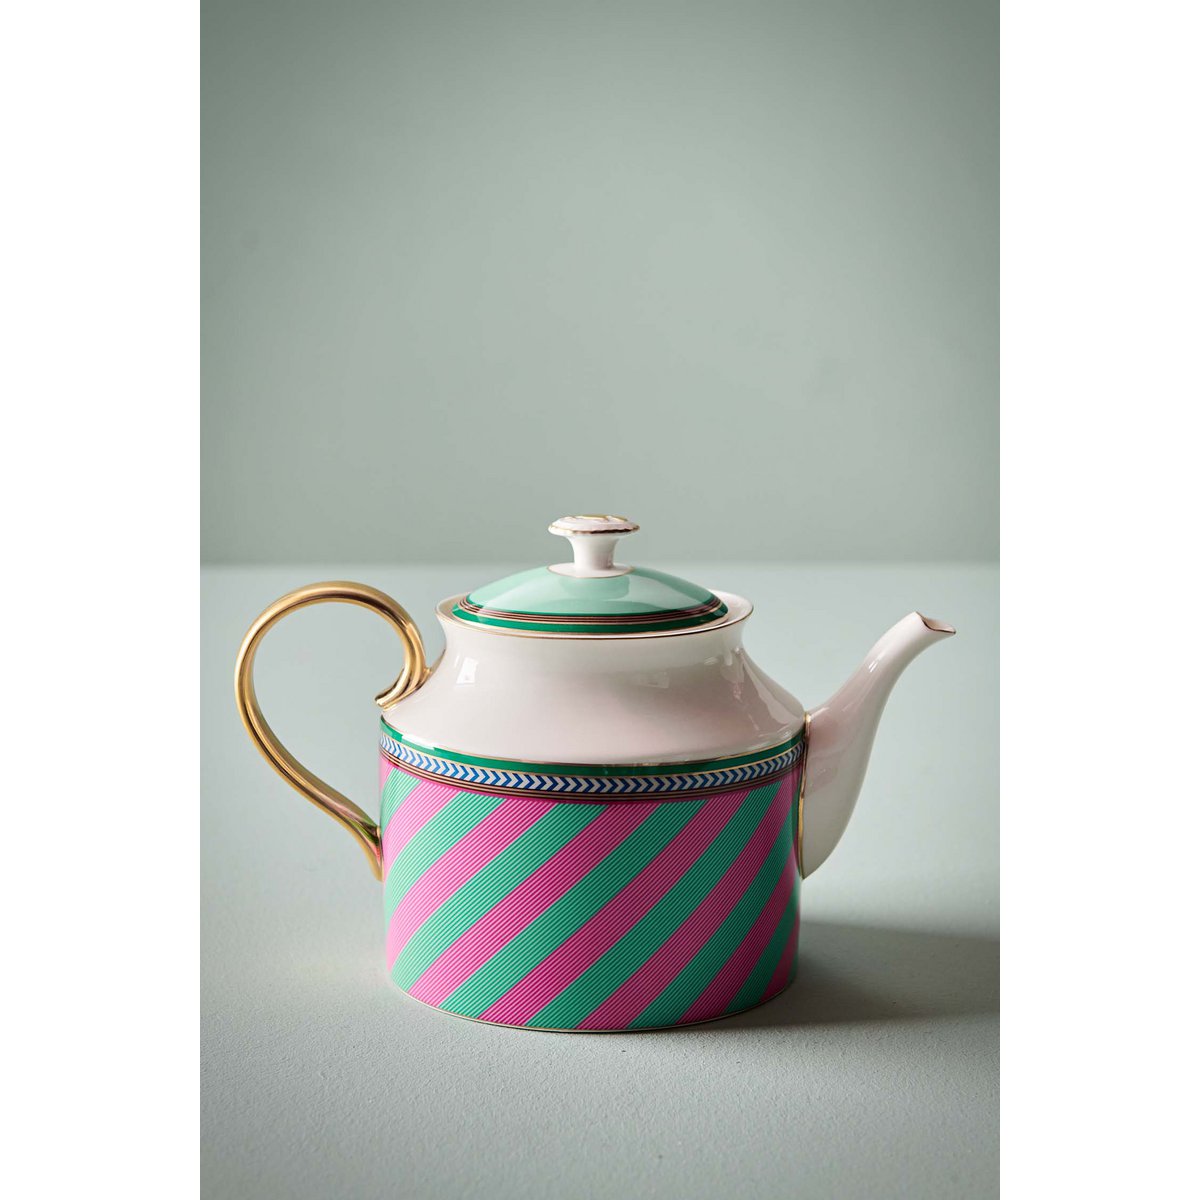 Tea Pot Large Chique Stripes Pink-Green 1.8ltr